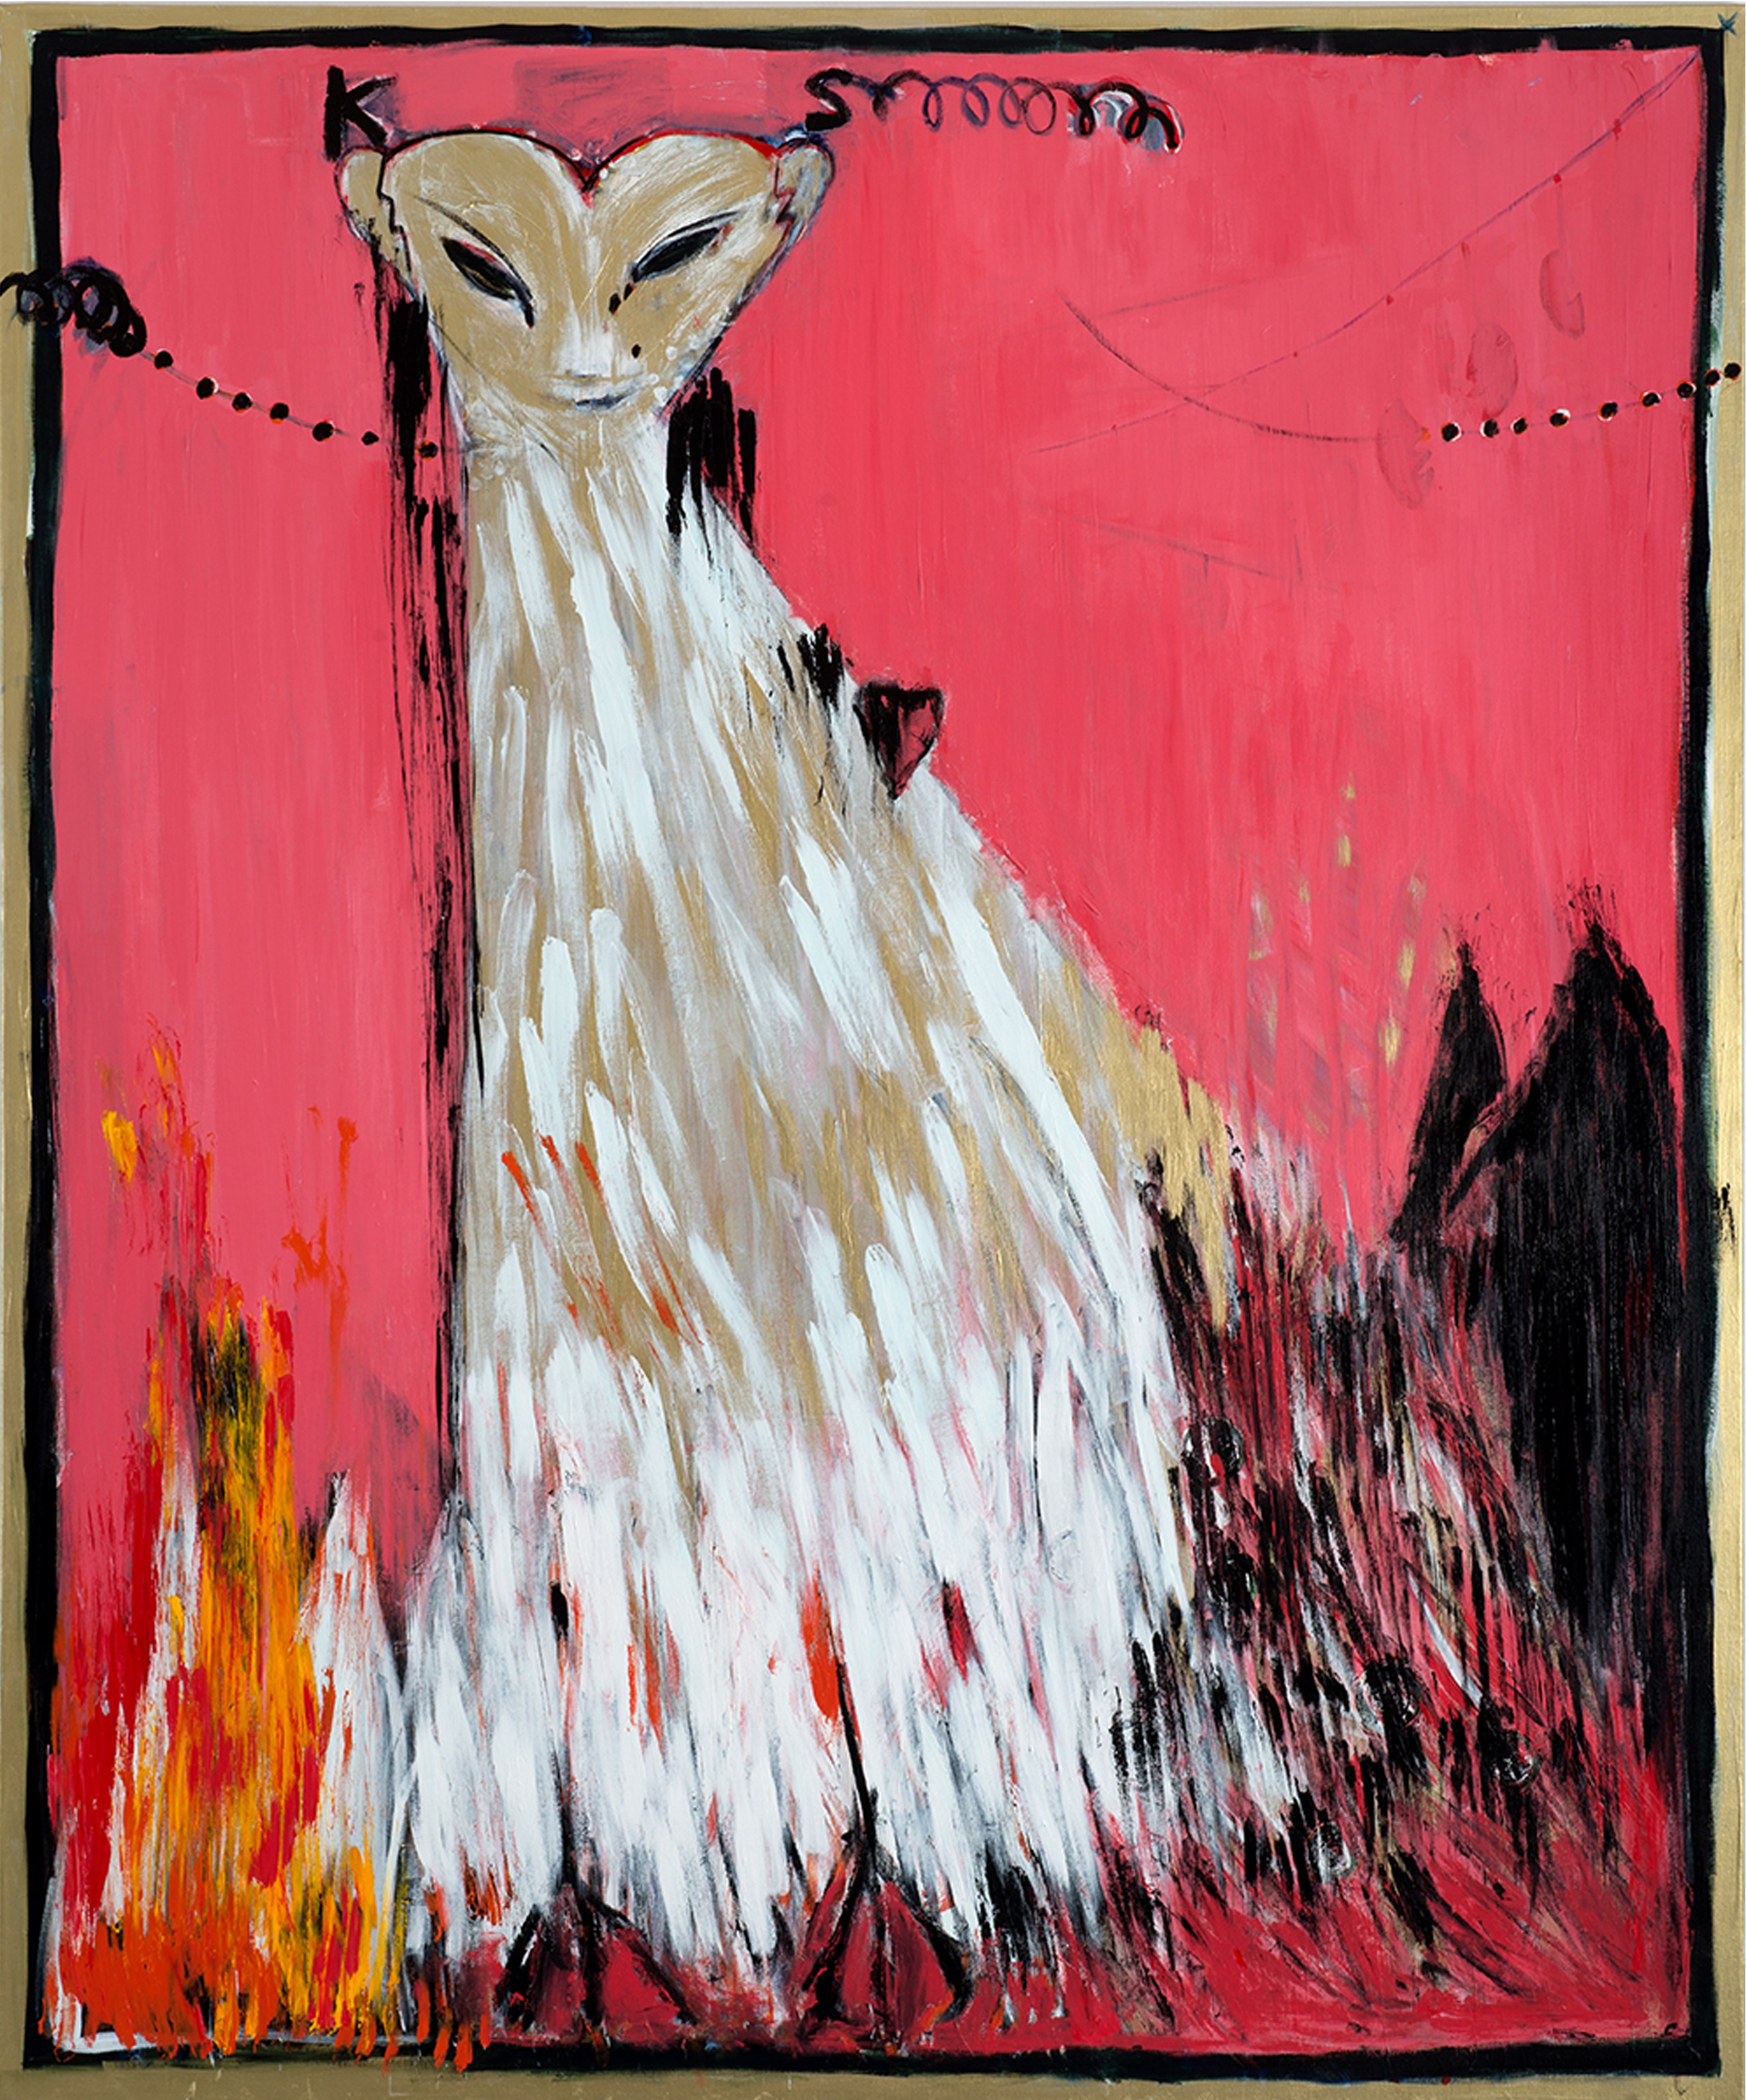 פנתרה מותק, חן שיש, 2016, אקריליק על בד, 150x180